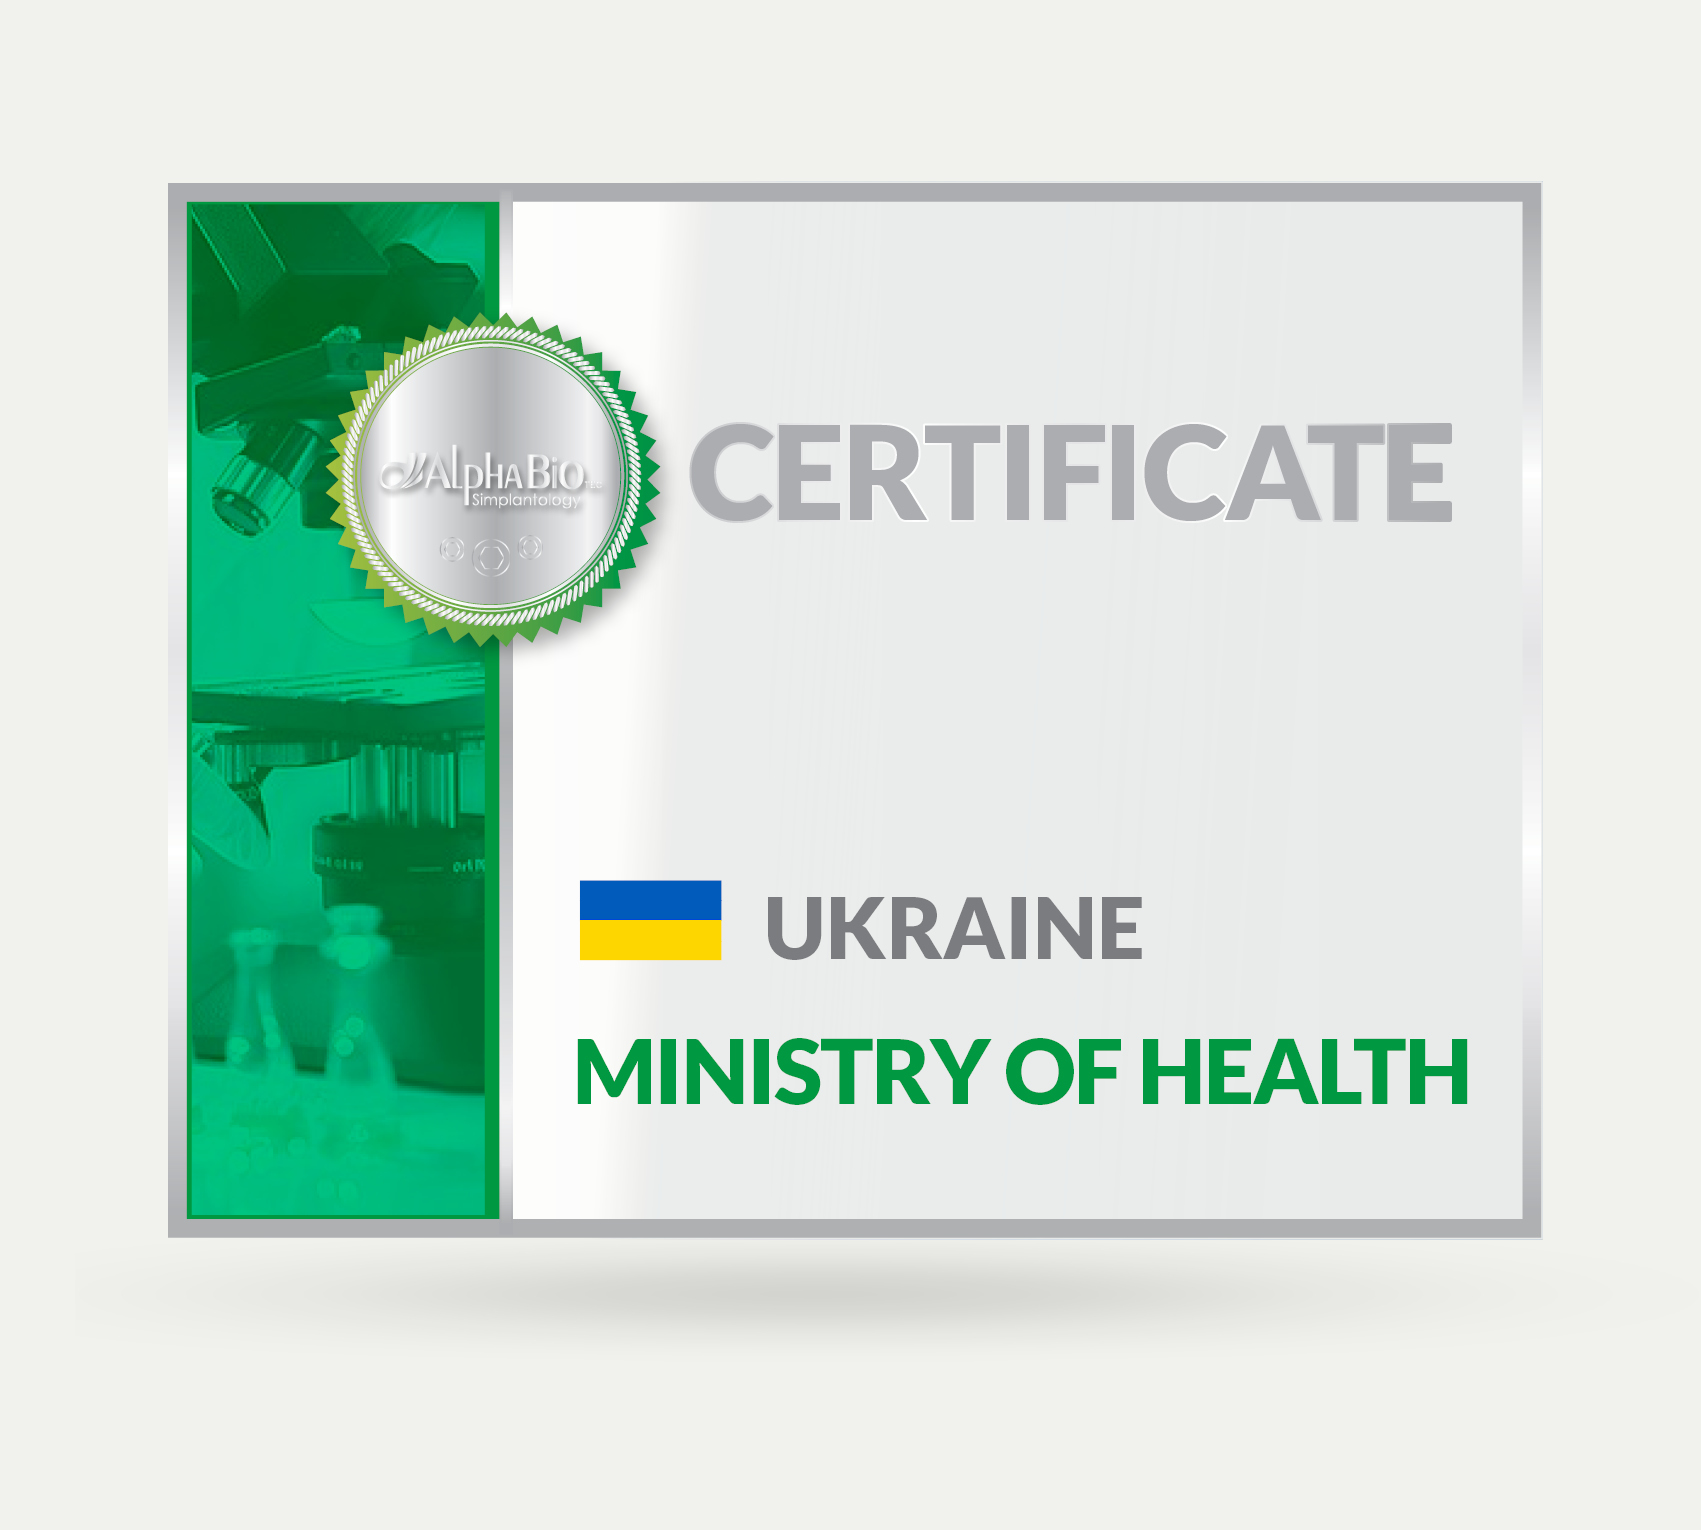 Certificate_Ukraine - Alpha Bio Tec